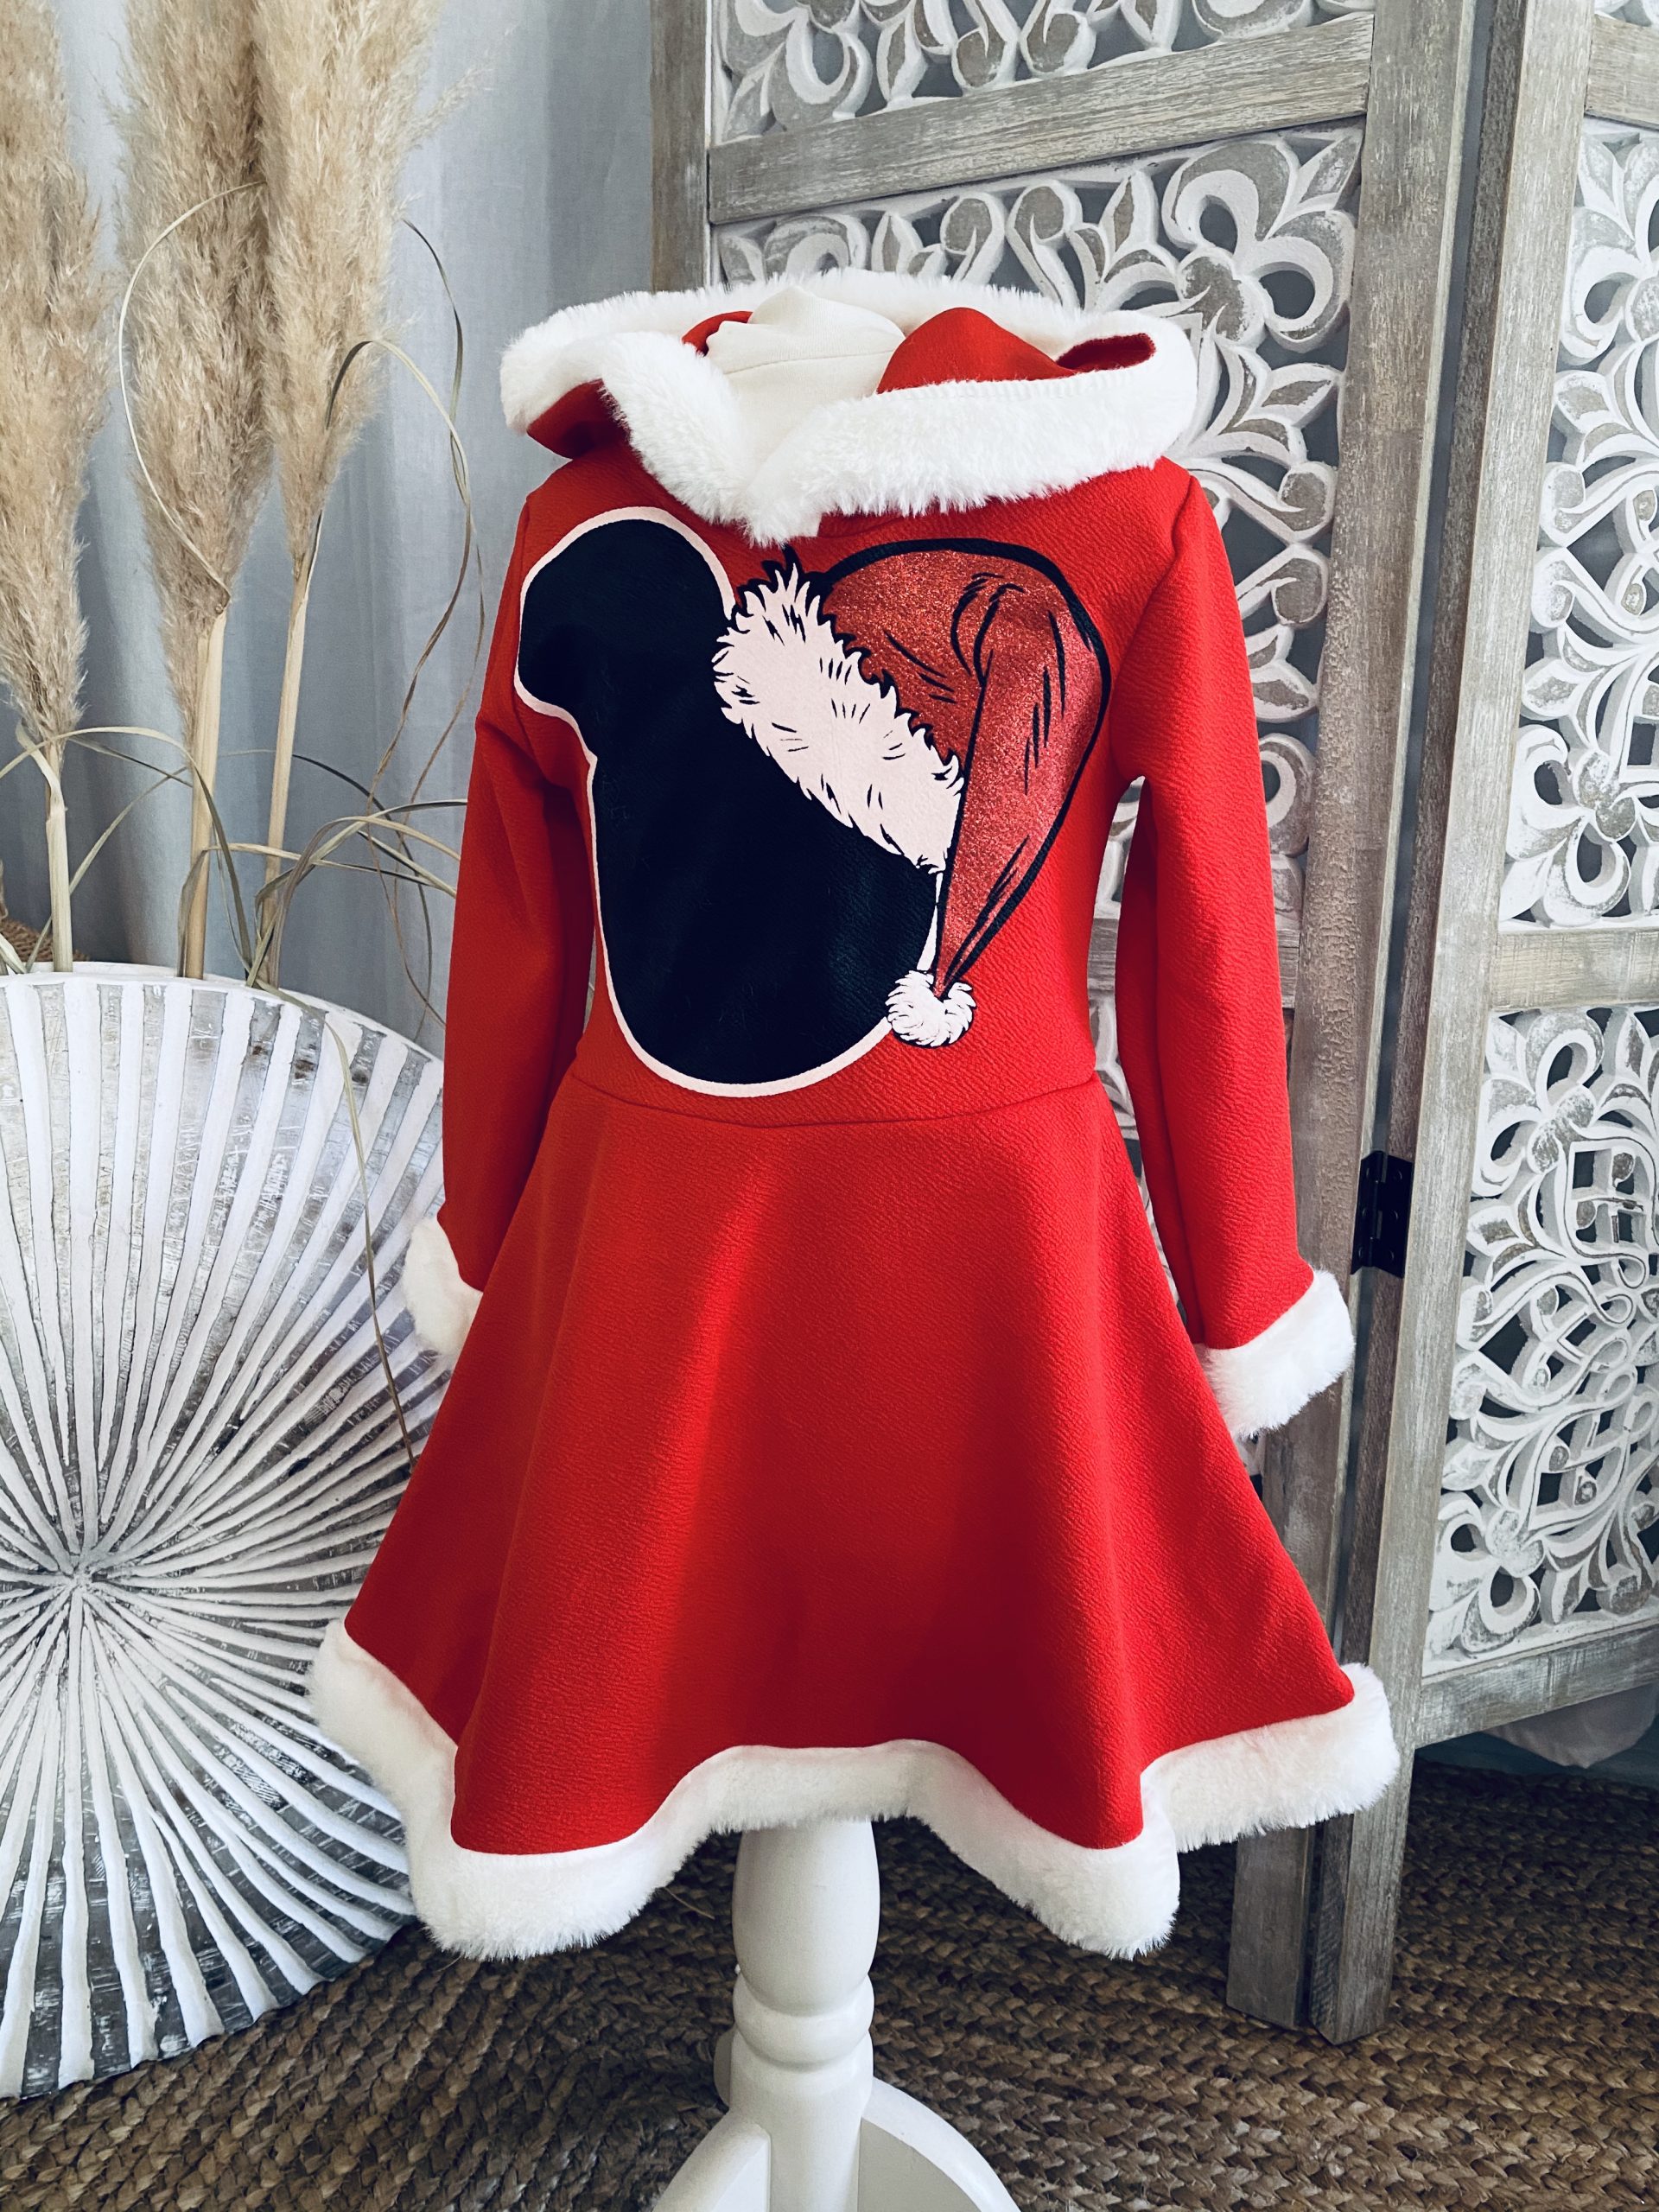 Frecoccialo Robe De Princesse pour Bébé Fille Imprimé Papa Noël Robe Noël de Fille à Manches Courtes Décoré Grand Noeuds au Dos avec Jupe Plissé